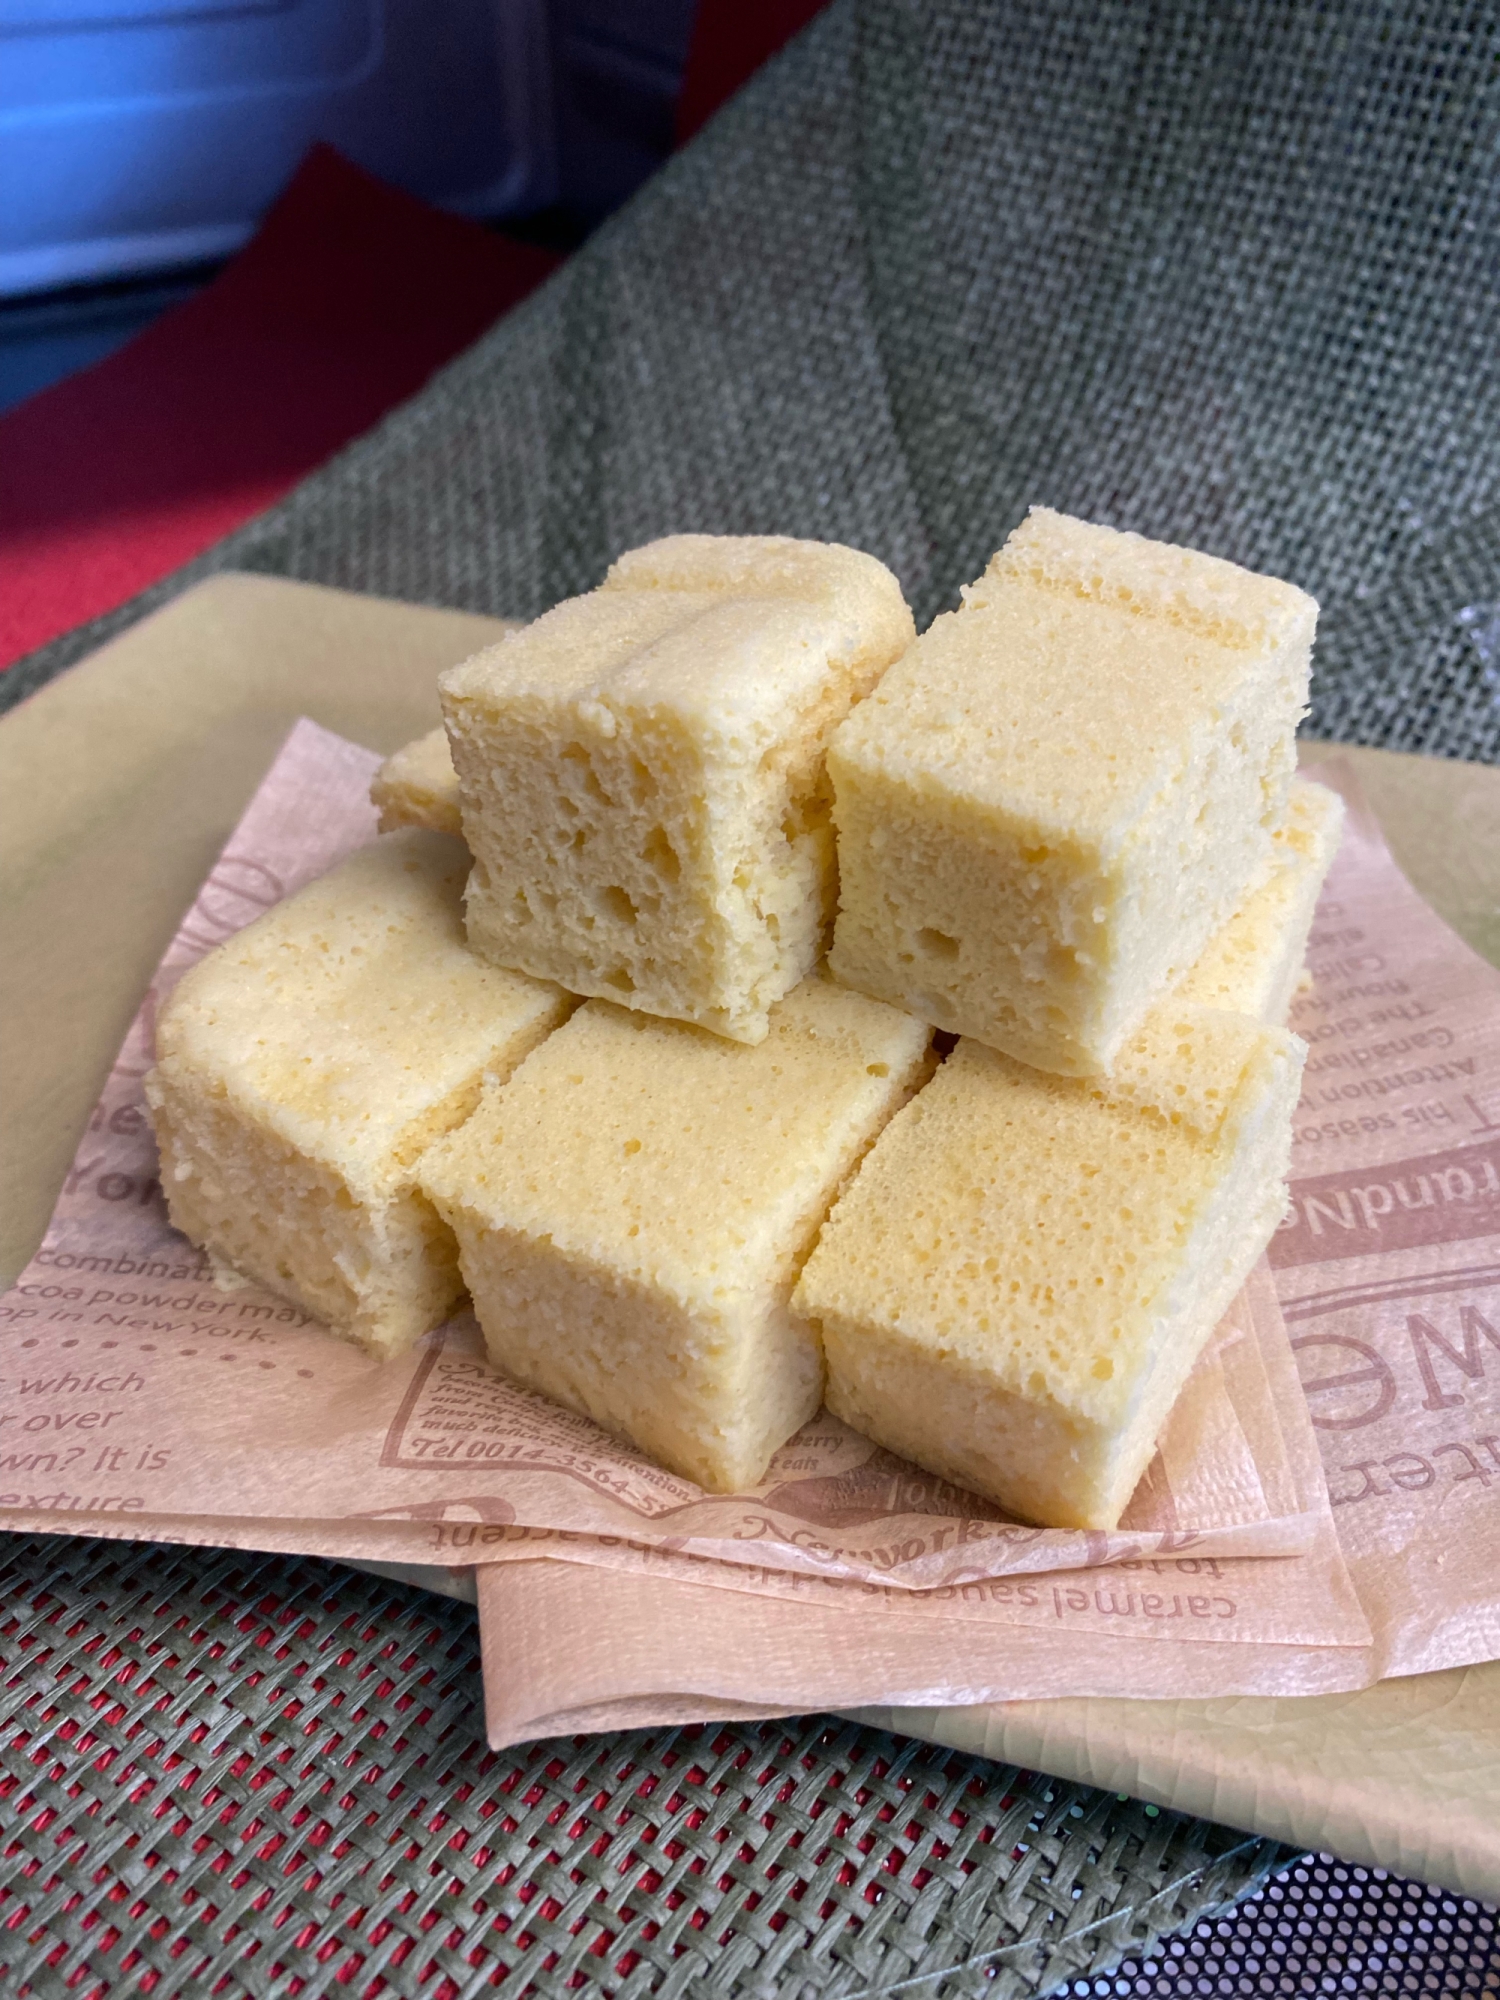 オリゴ糖入り❣️ヤ○ザキの北海道チーズ蒸しケーキ風